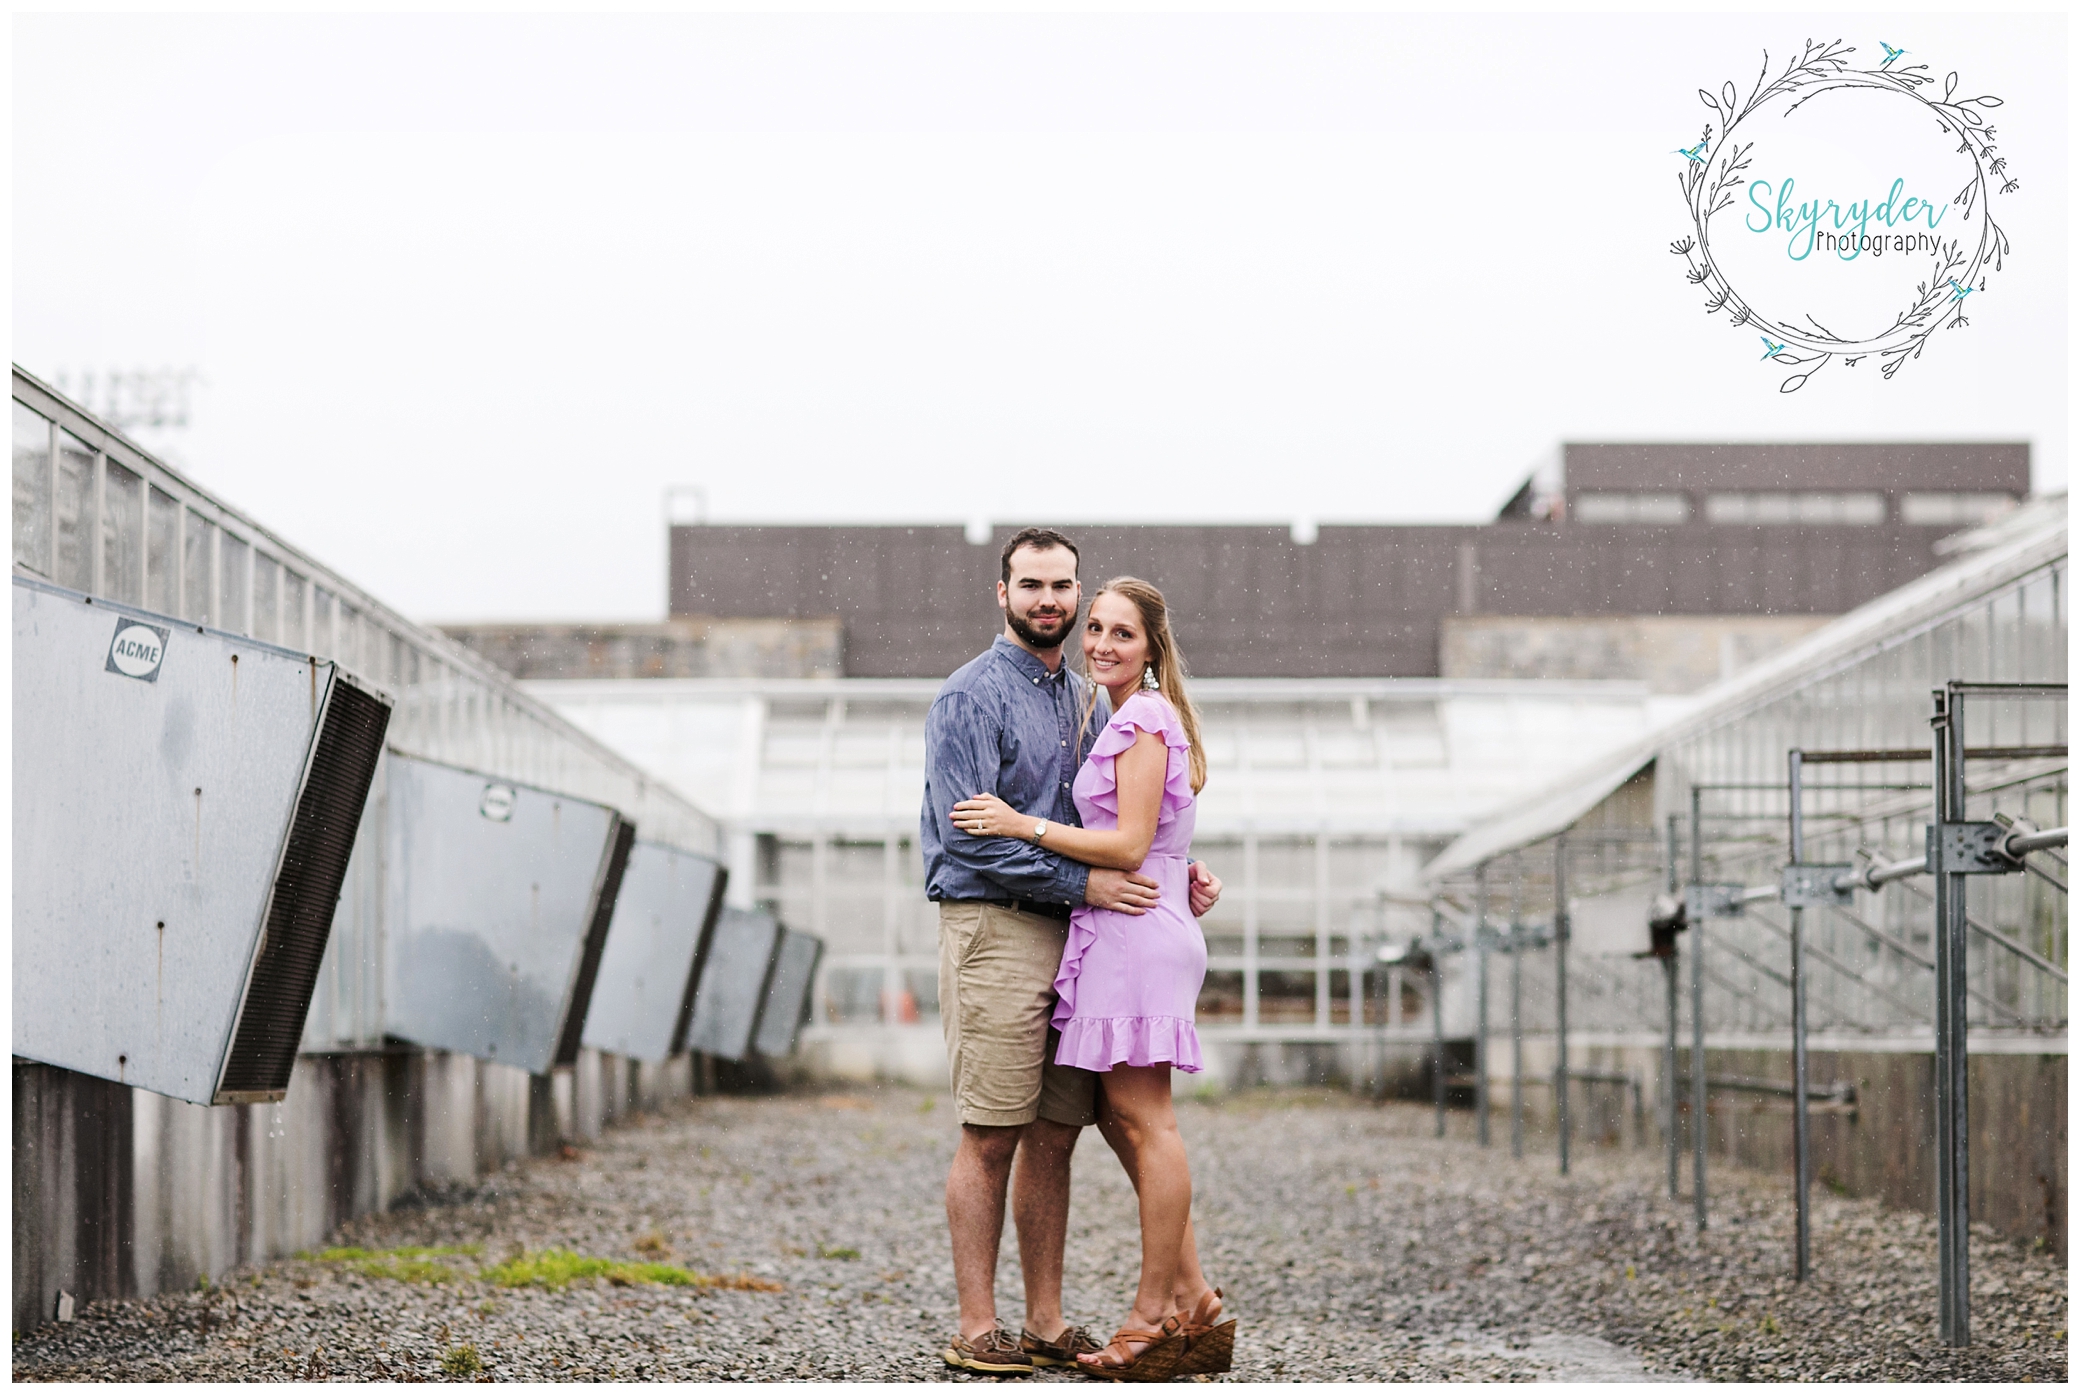 Maria + Zac | Blacksburg Engagement Photographer